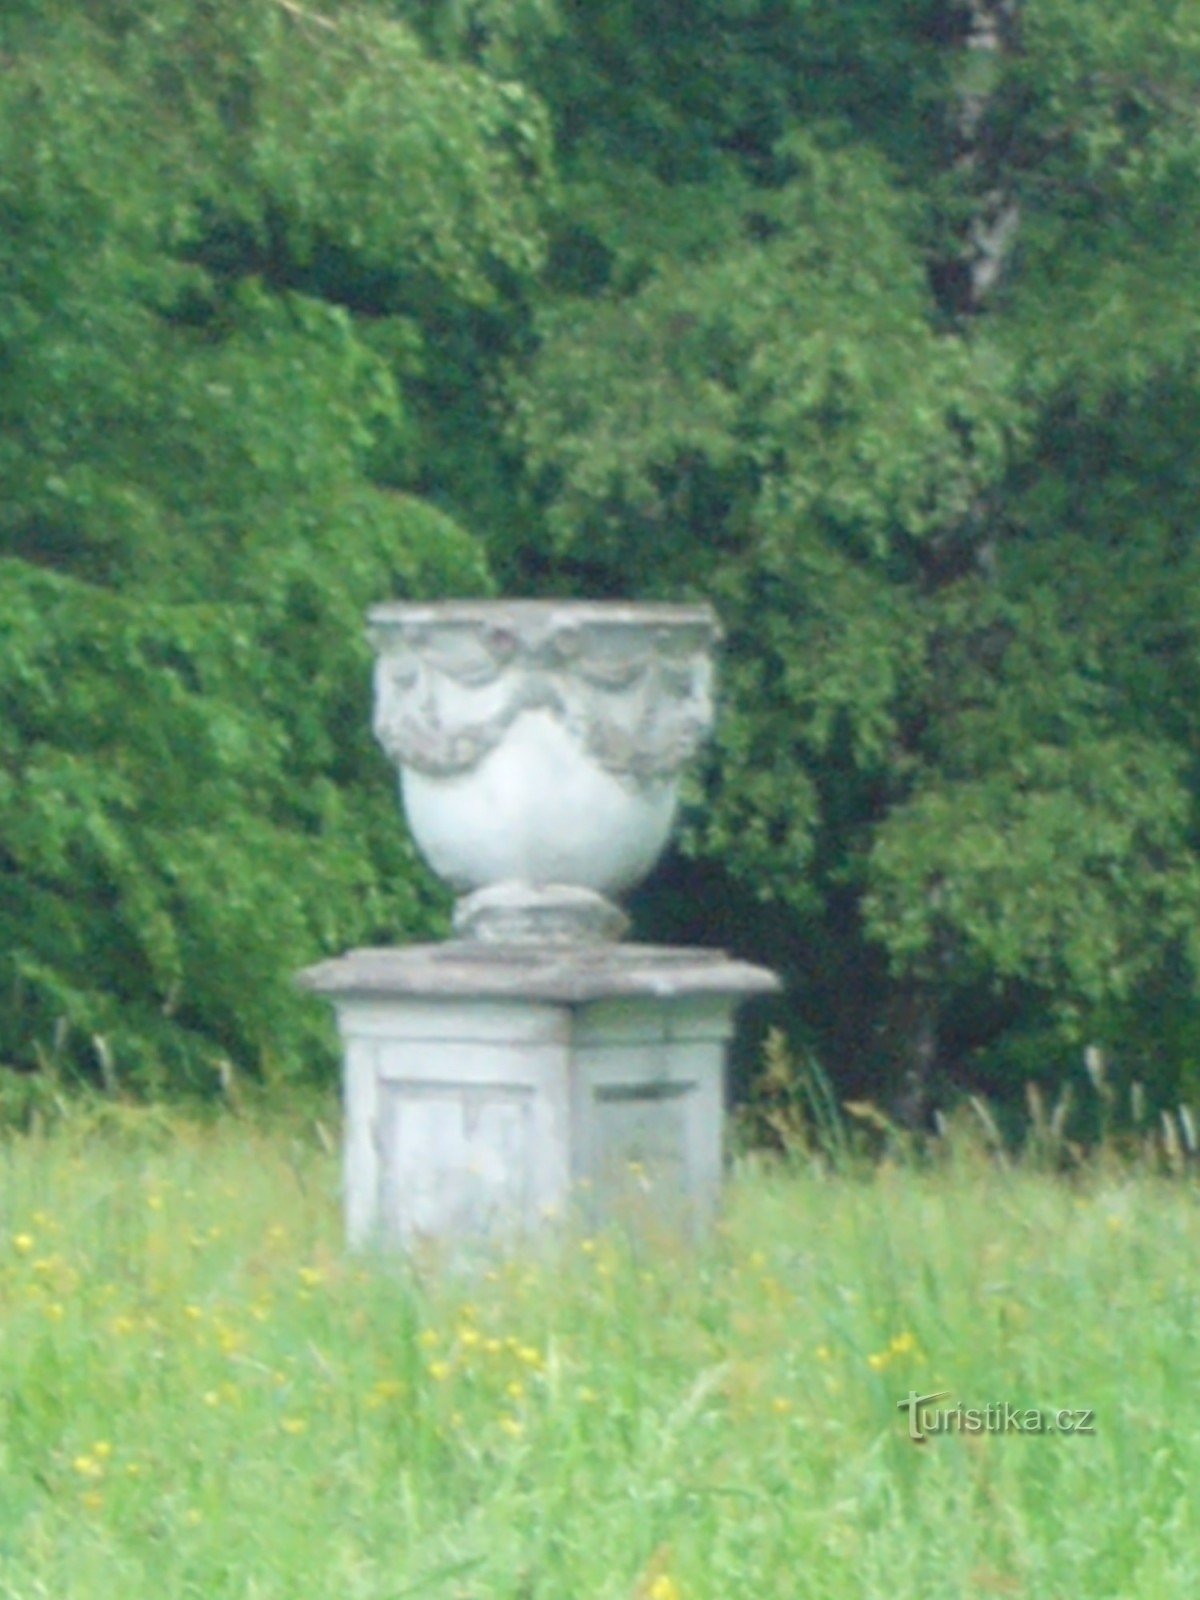 Dobroslavice - park zamkowy, waza barokowa